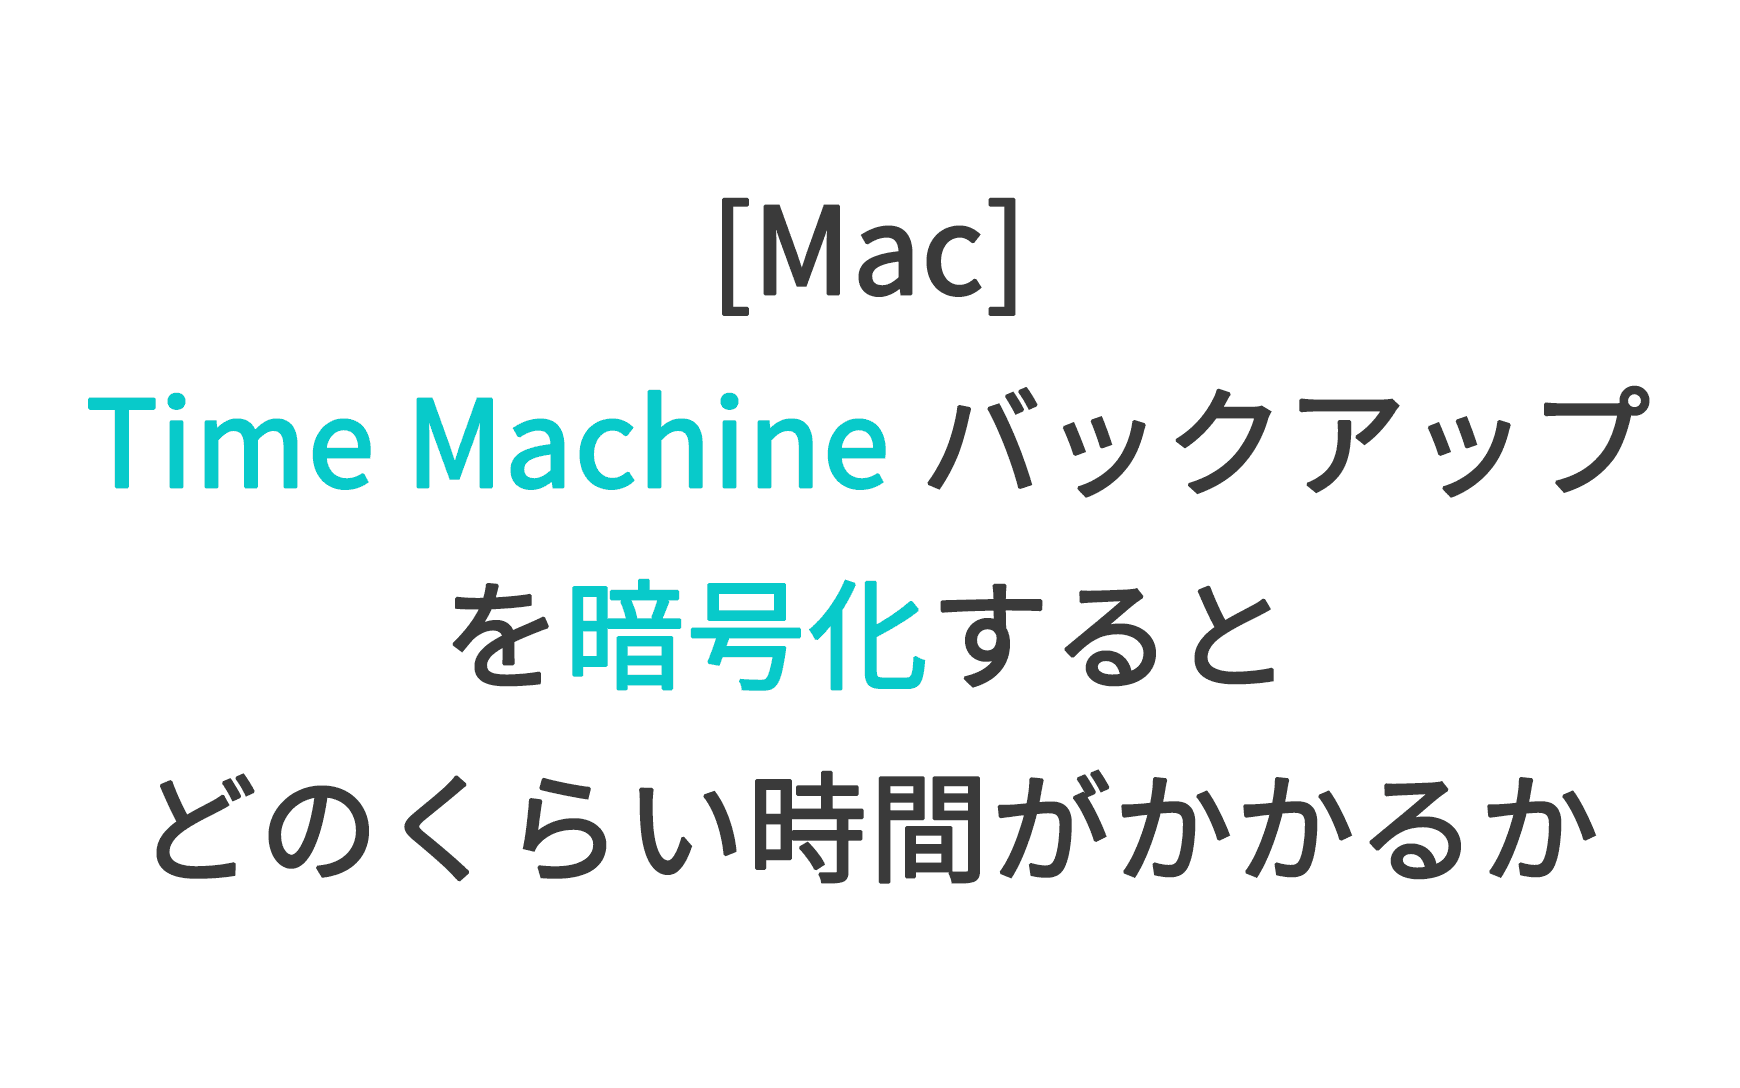 [Mac] Time Machine バックアップを暗号化するとどのくらい時間がかかるか